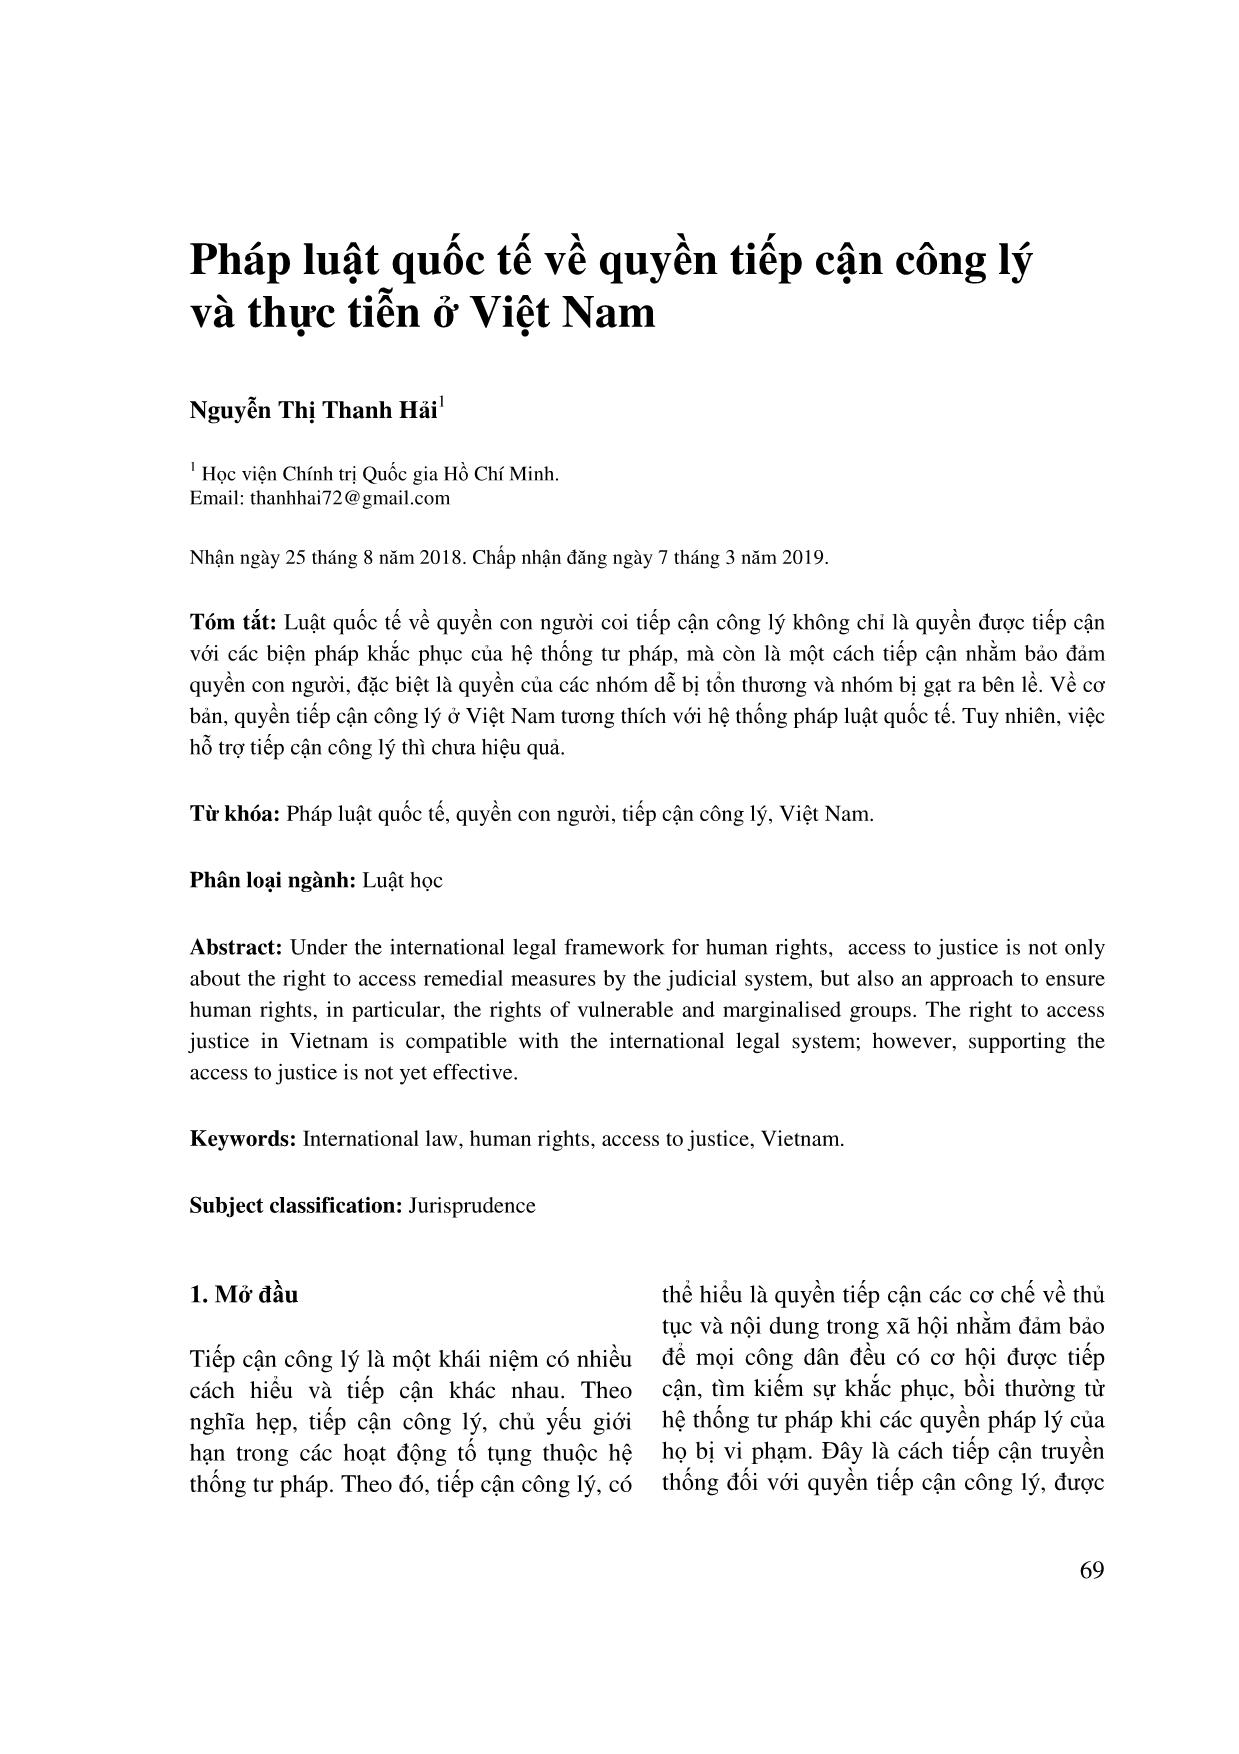 Pháp luật quốc tế về quyền tiếp cận công lý và thực tiễn ở Việt Nam trang 1